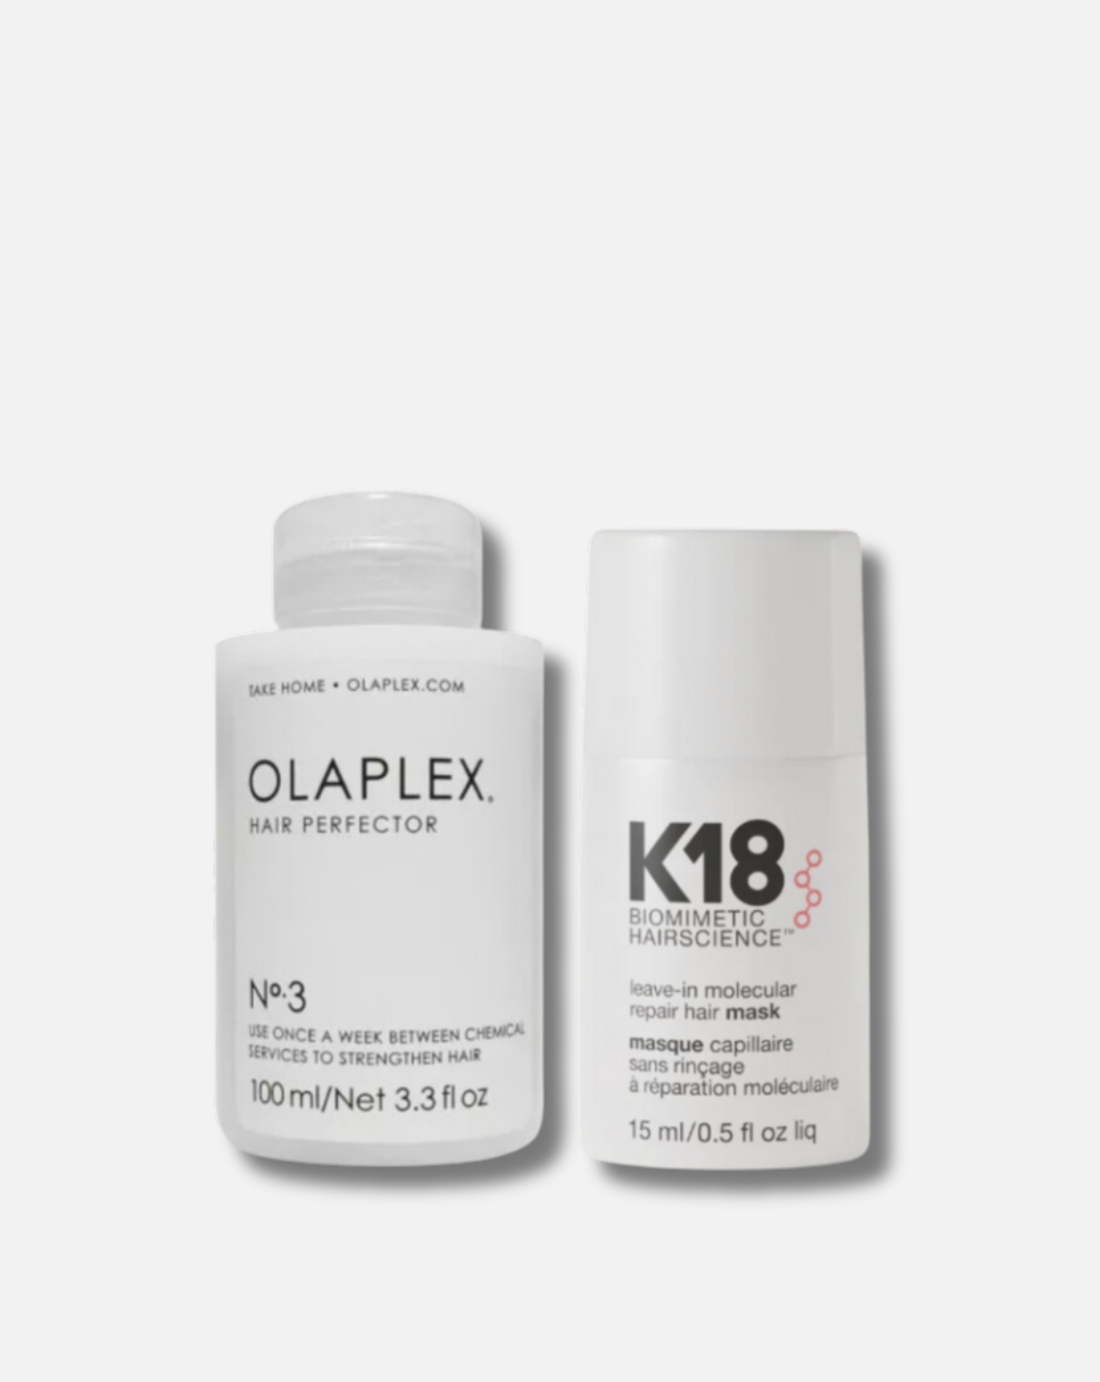 Olaplex no 3 + k18 mask 15 ml